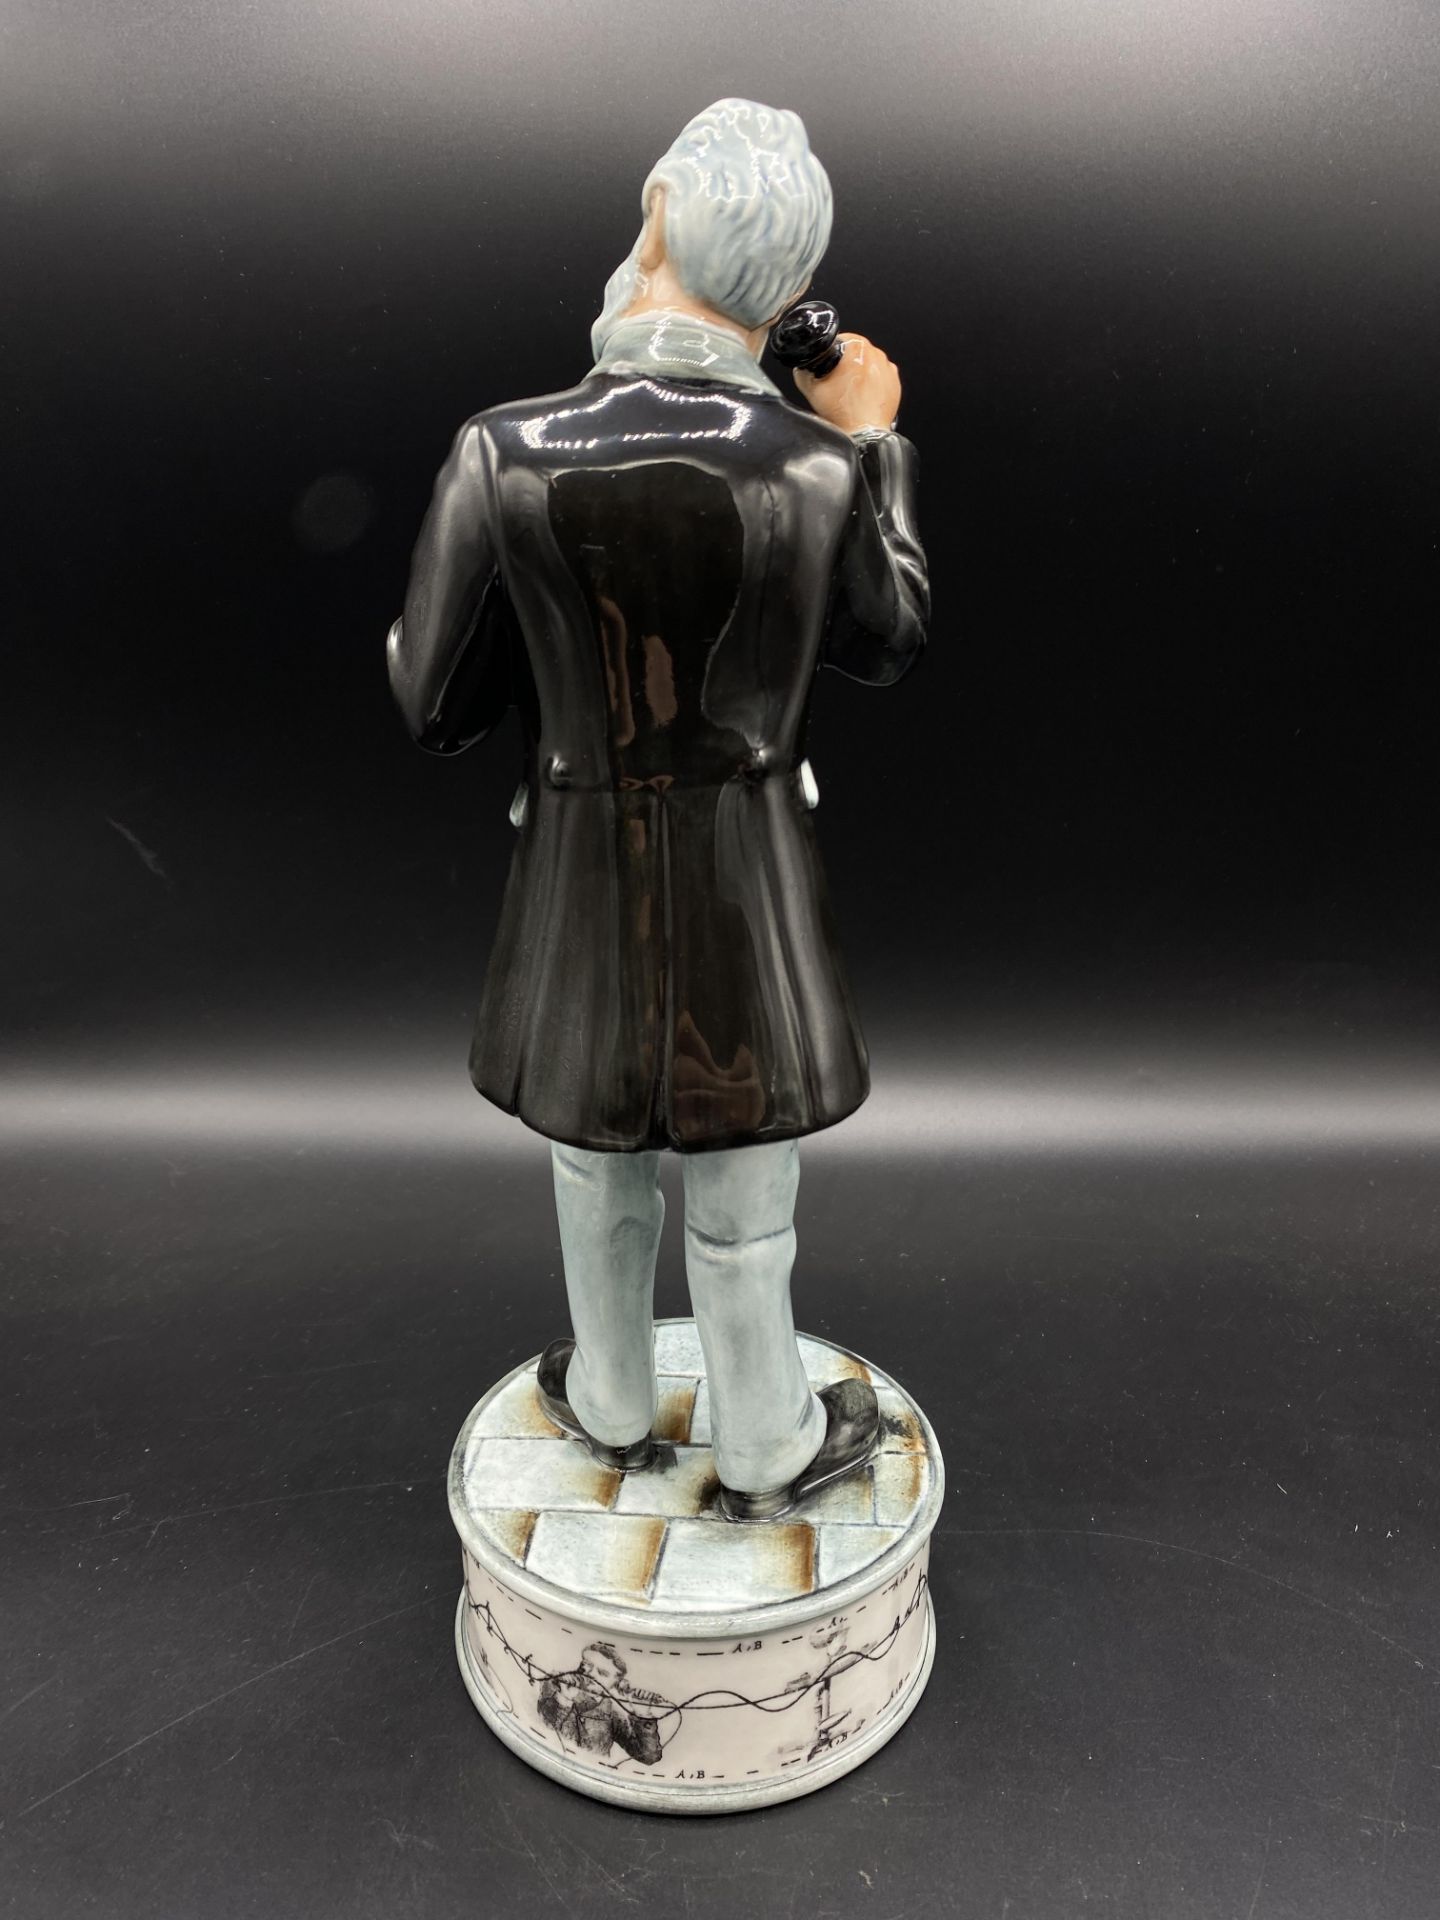 Royal Doulton Prestige figurine Alexander Graham Bell - Image 3 of 4